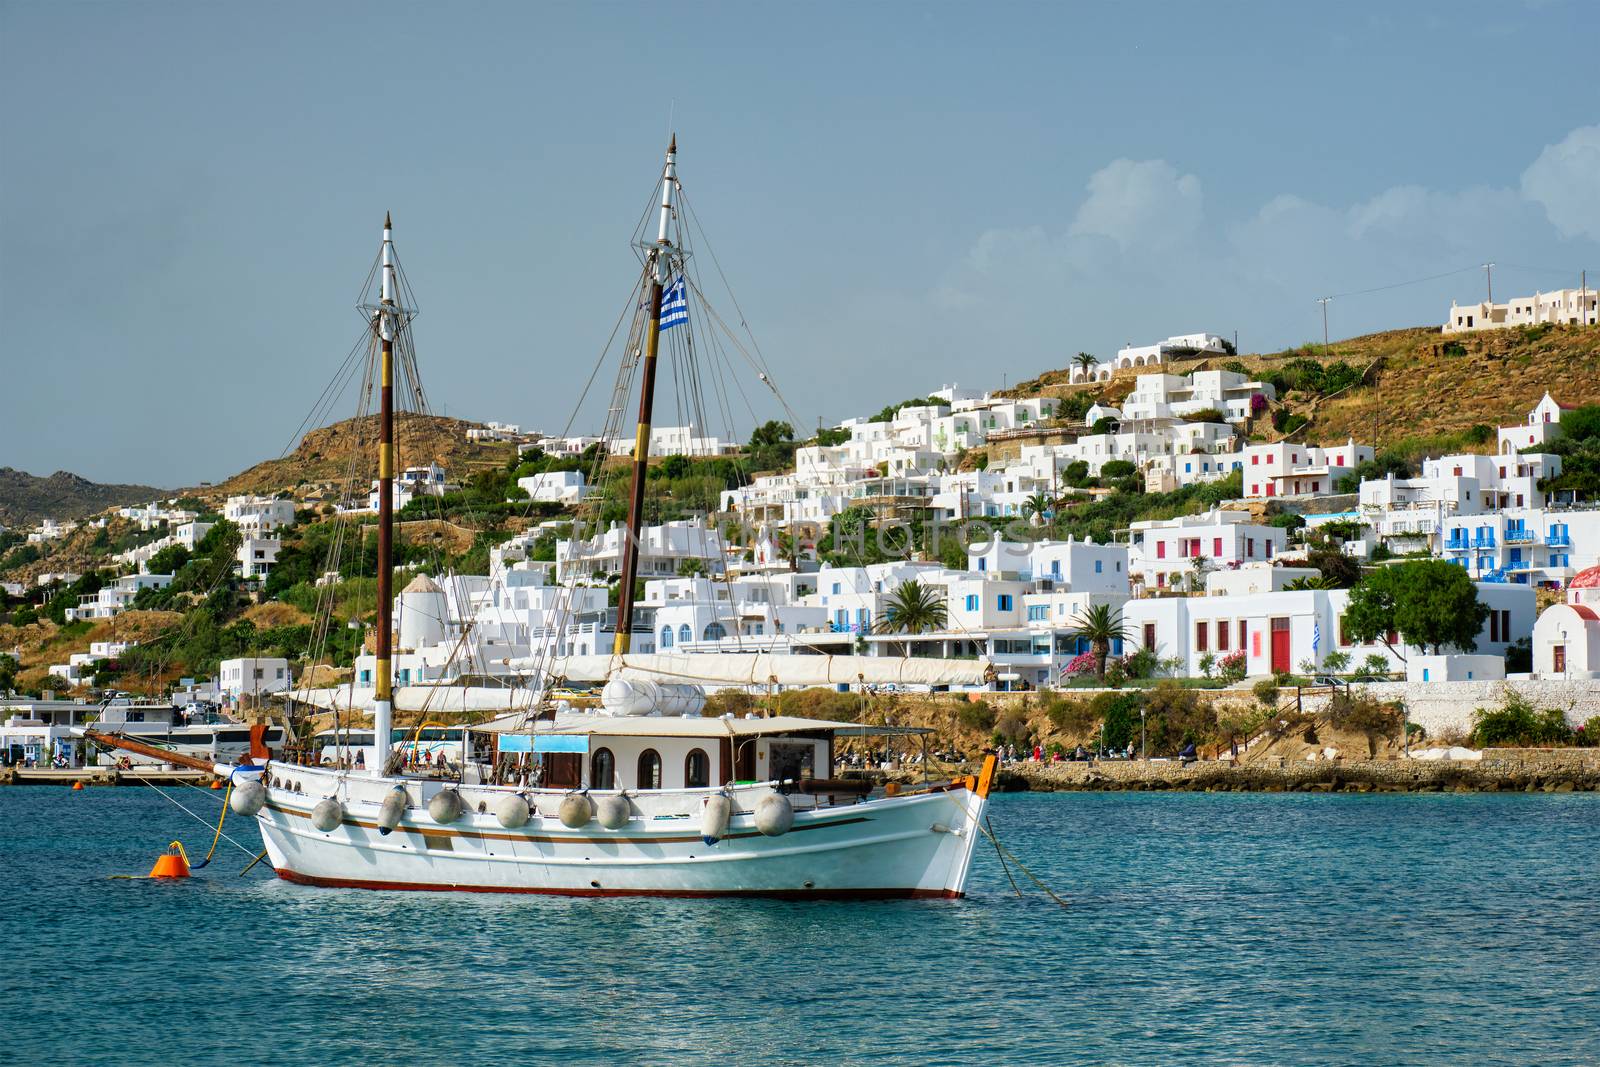 Vessel schooner moored in port harbor of Chora town, Mykonos island, Greece